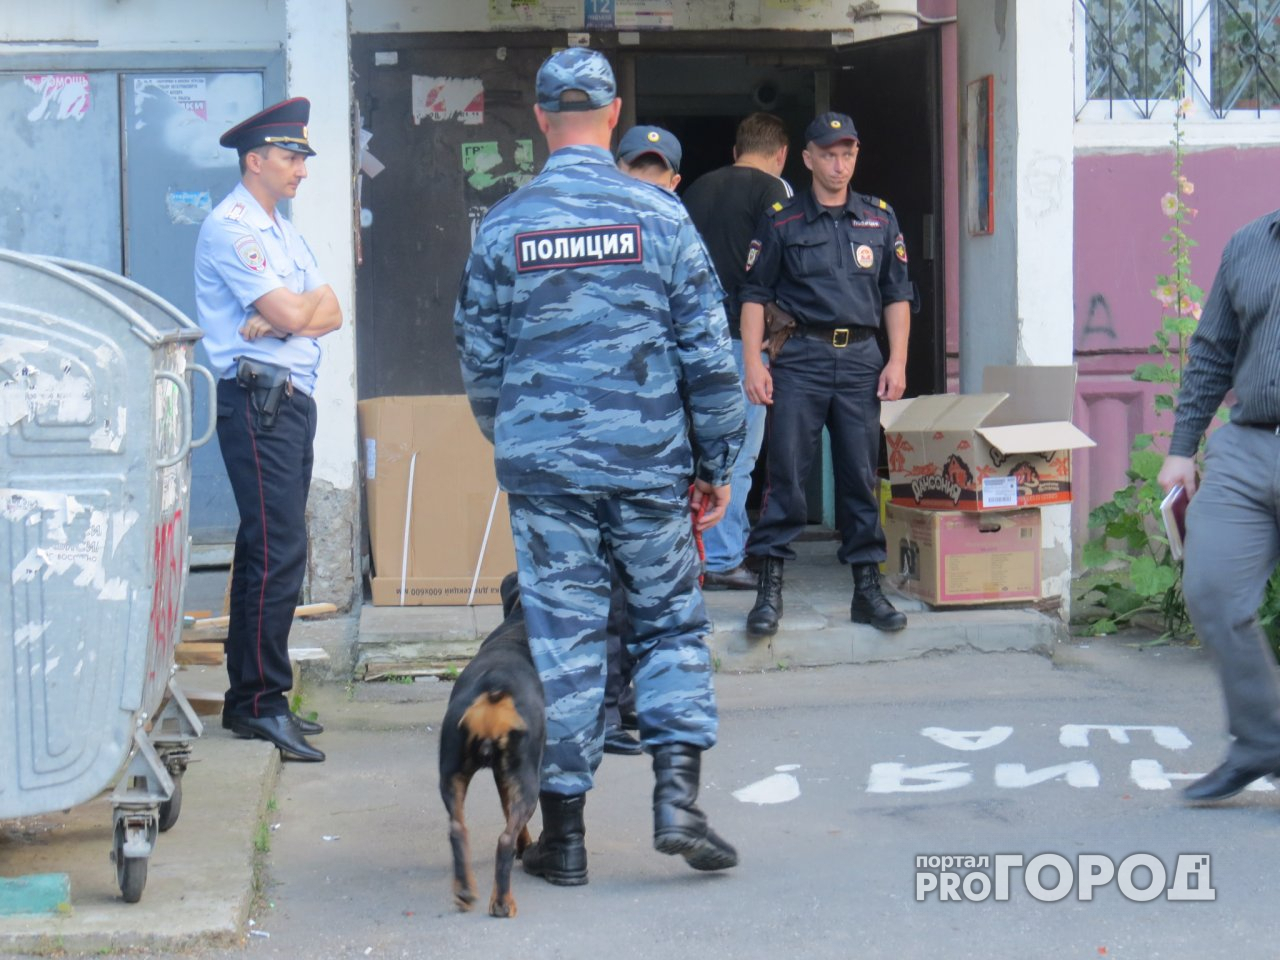 В одном из домов Кирова обнаружили тело мужчины: рассматривается версия суицида